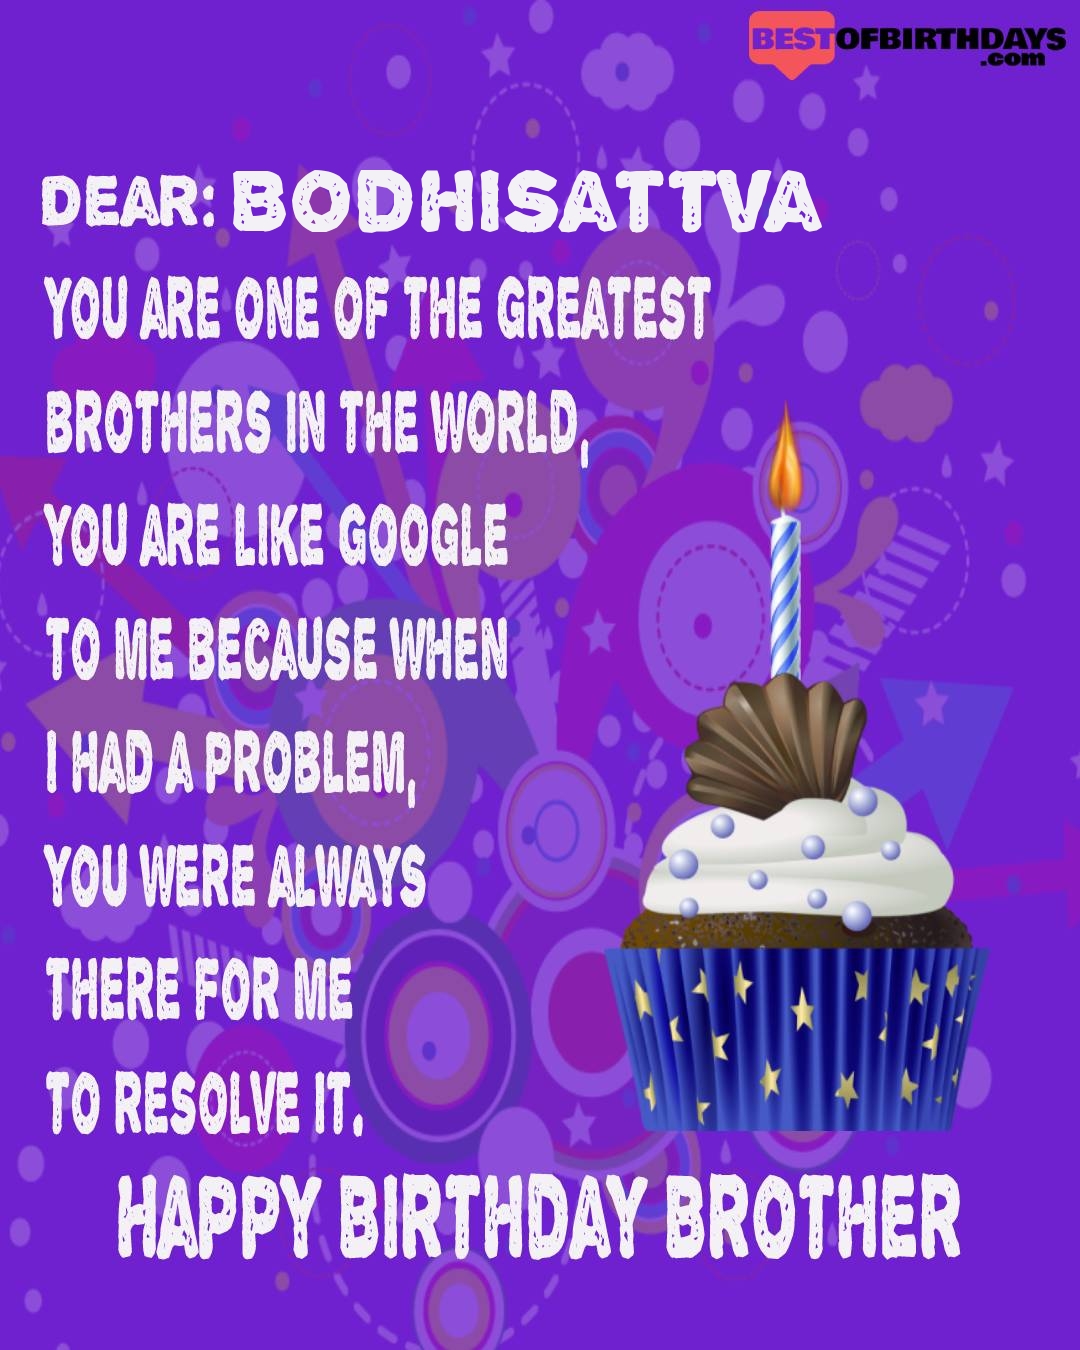 Happy birthday bodhisattva bhai brother bro